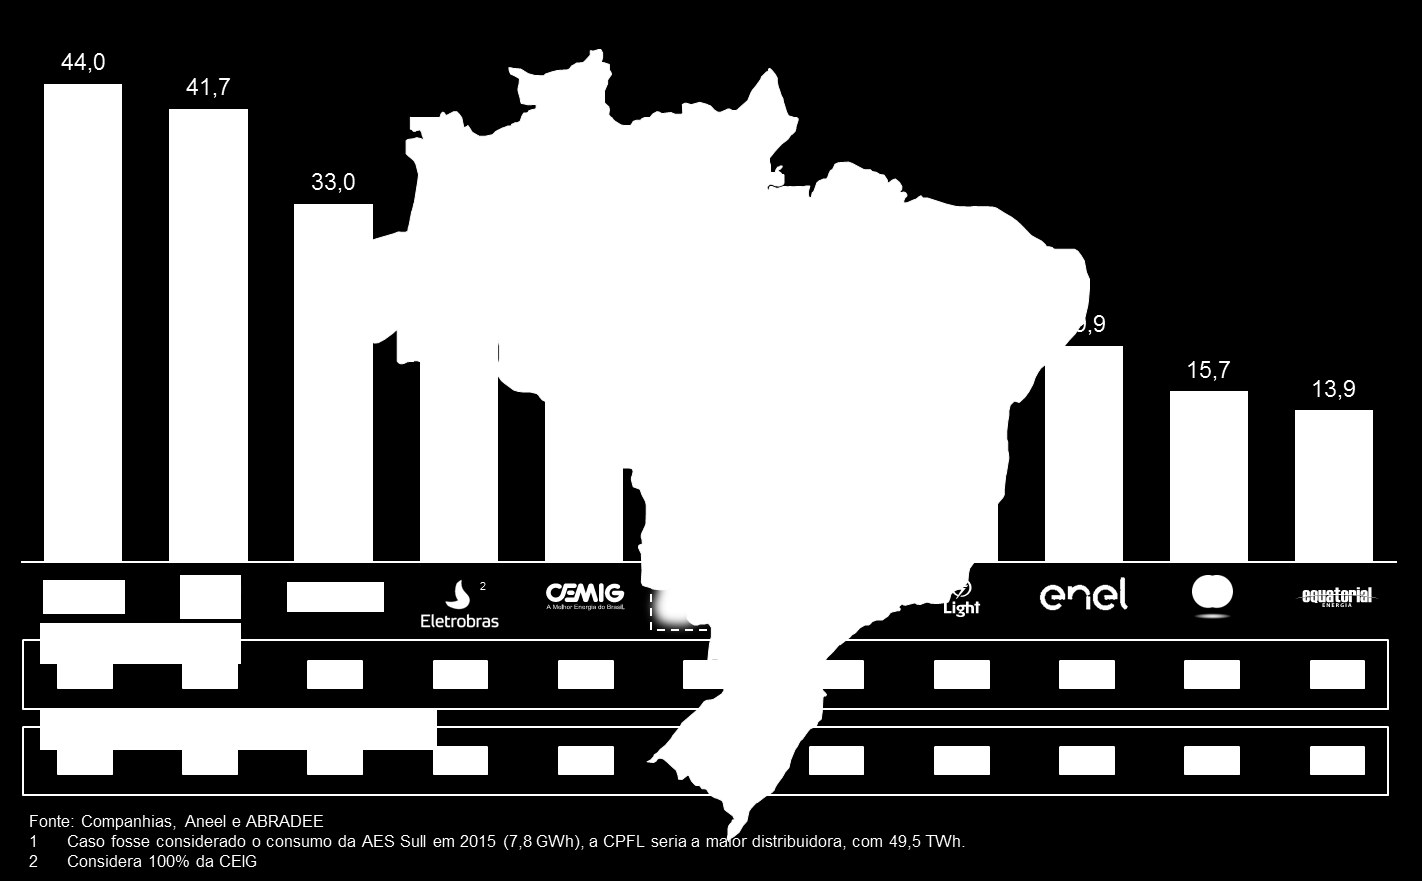 GRUPO ENERGISA 6ª maior empresa de distribuição de energia do Brasil e